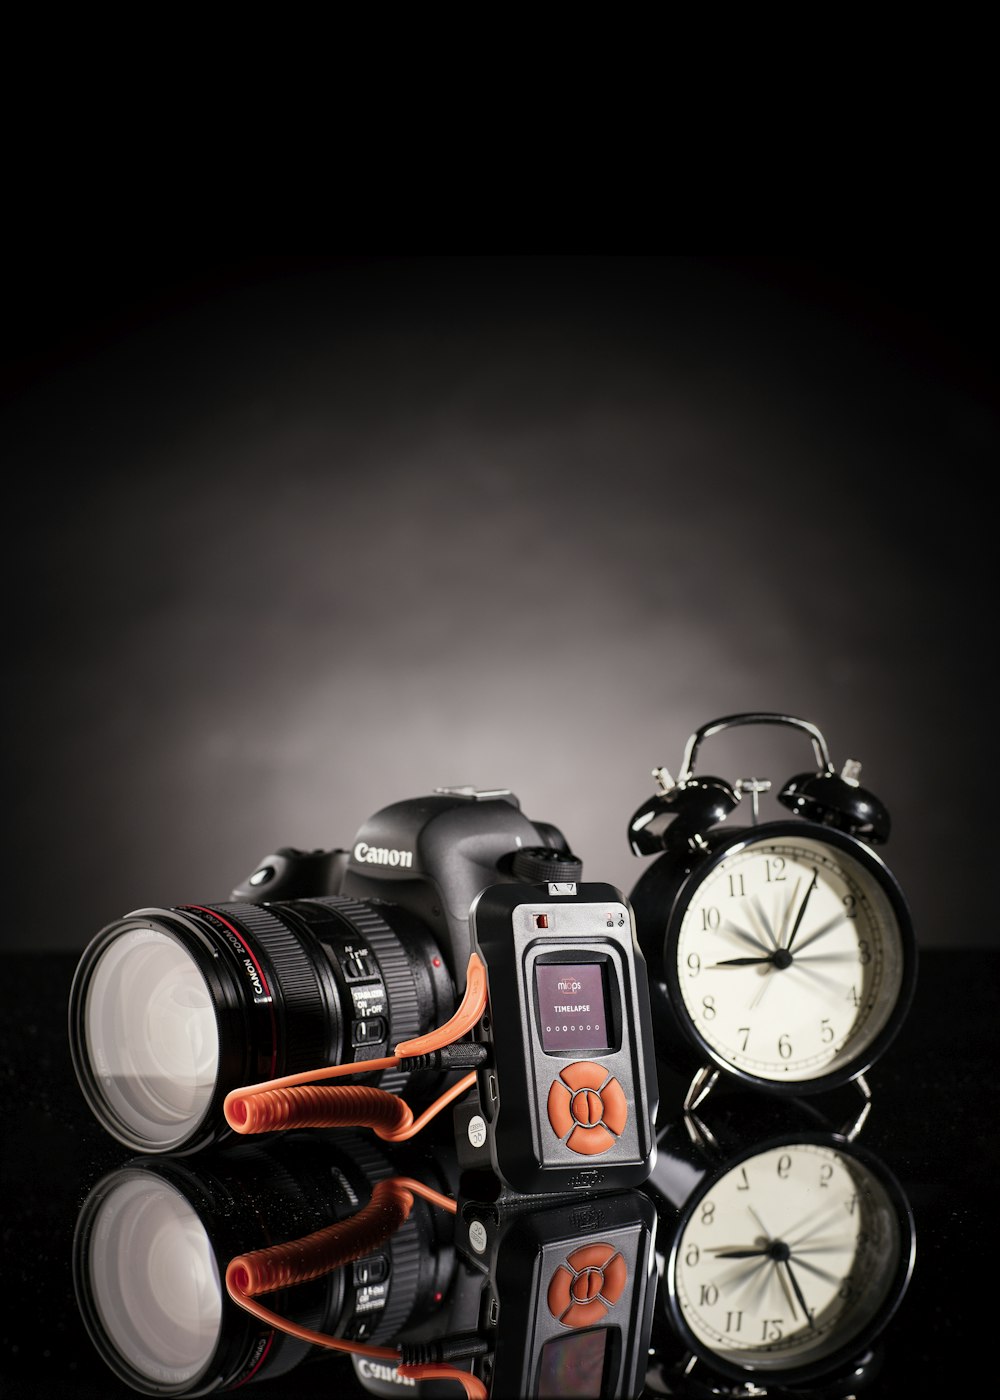 黒いツインベル目覚まし時計の横にあるキヤノンデジタル一眼レフカメラの写真